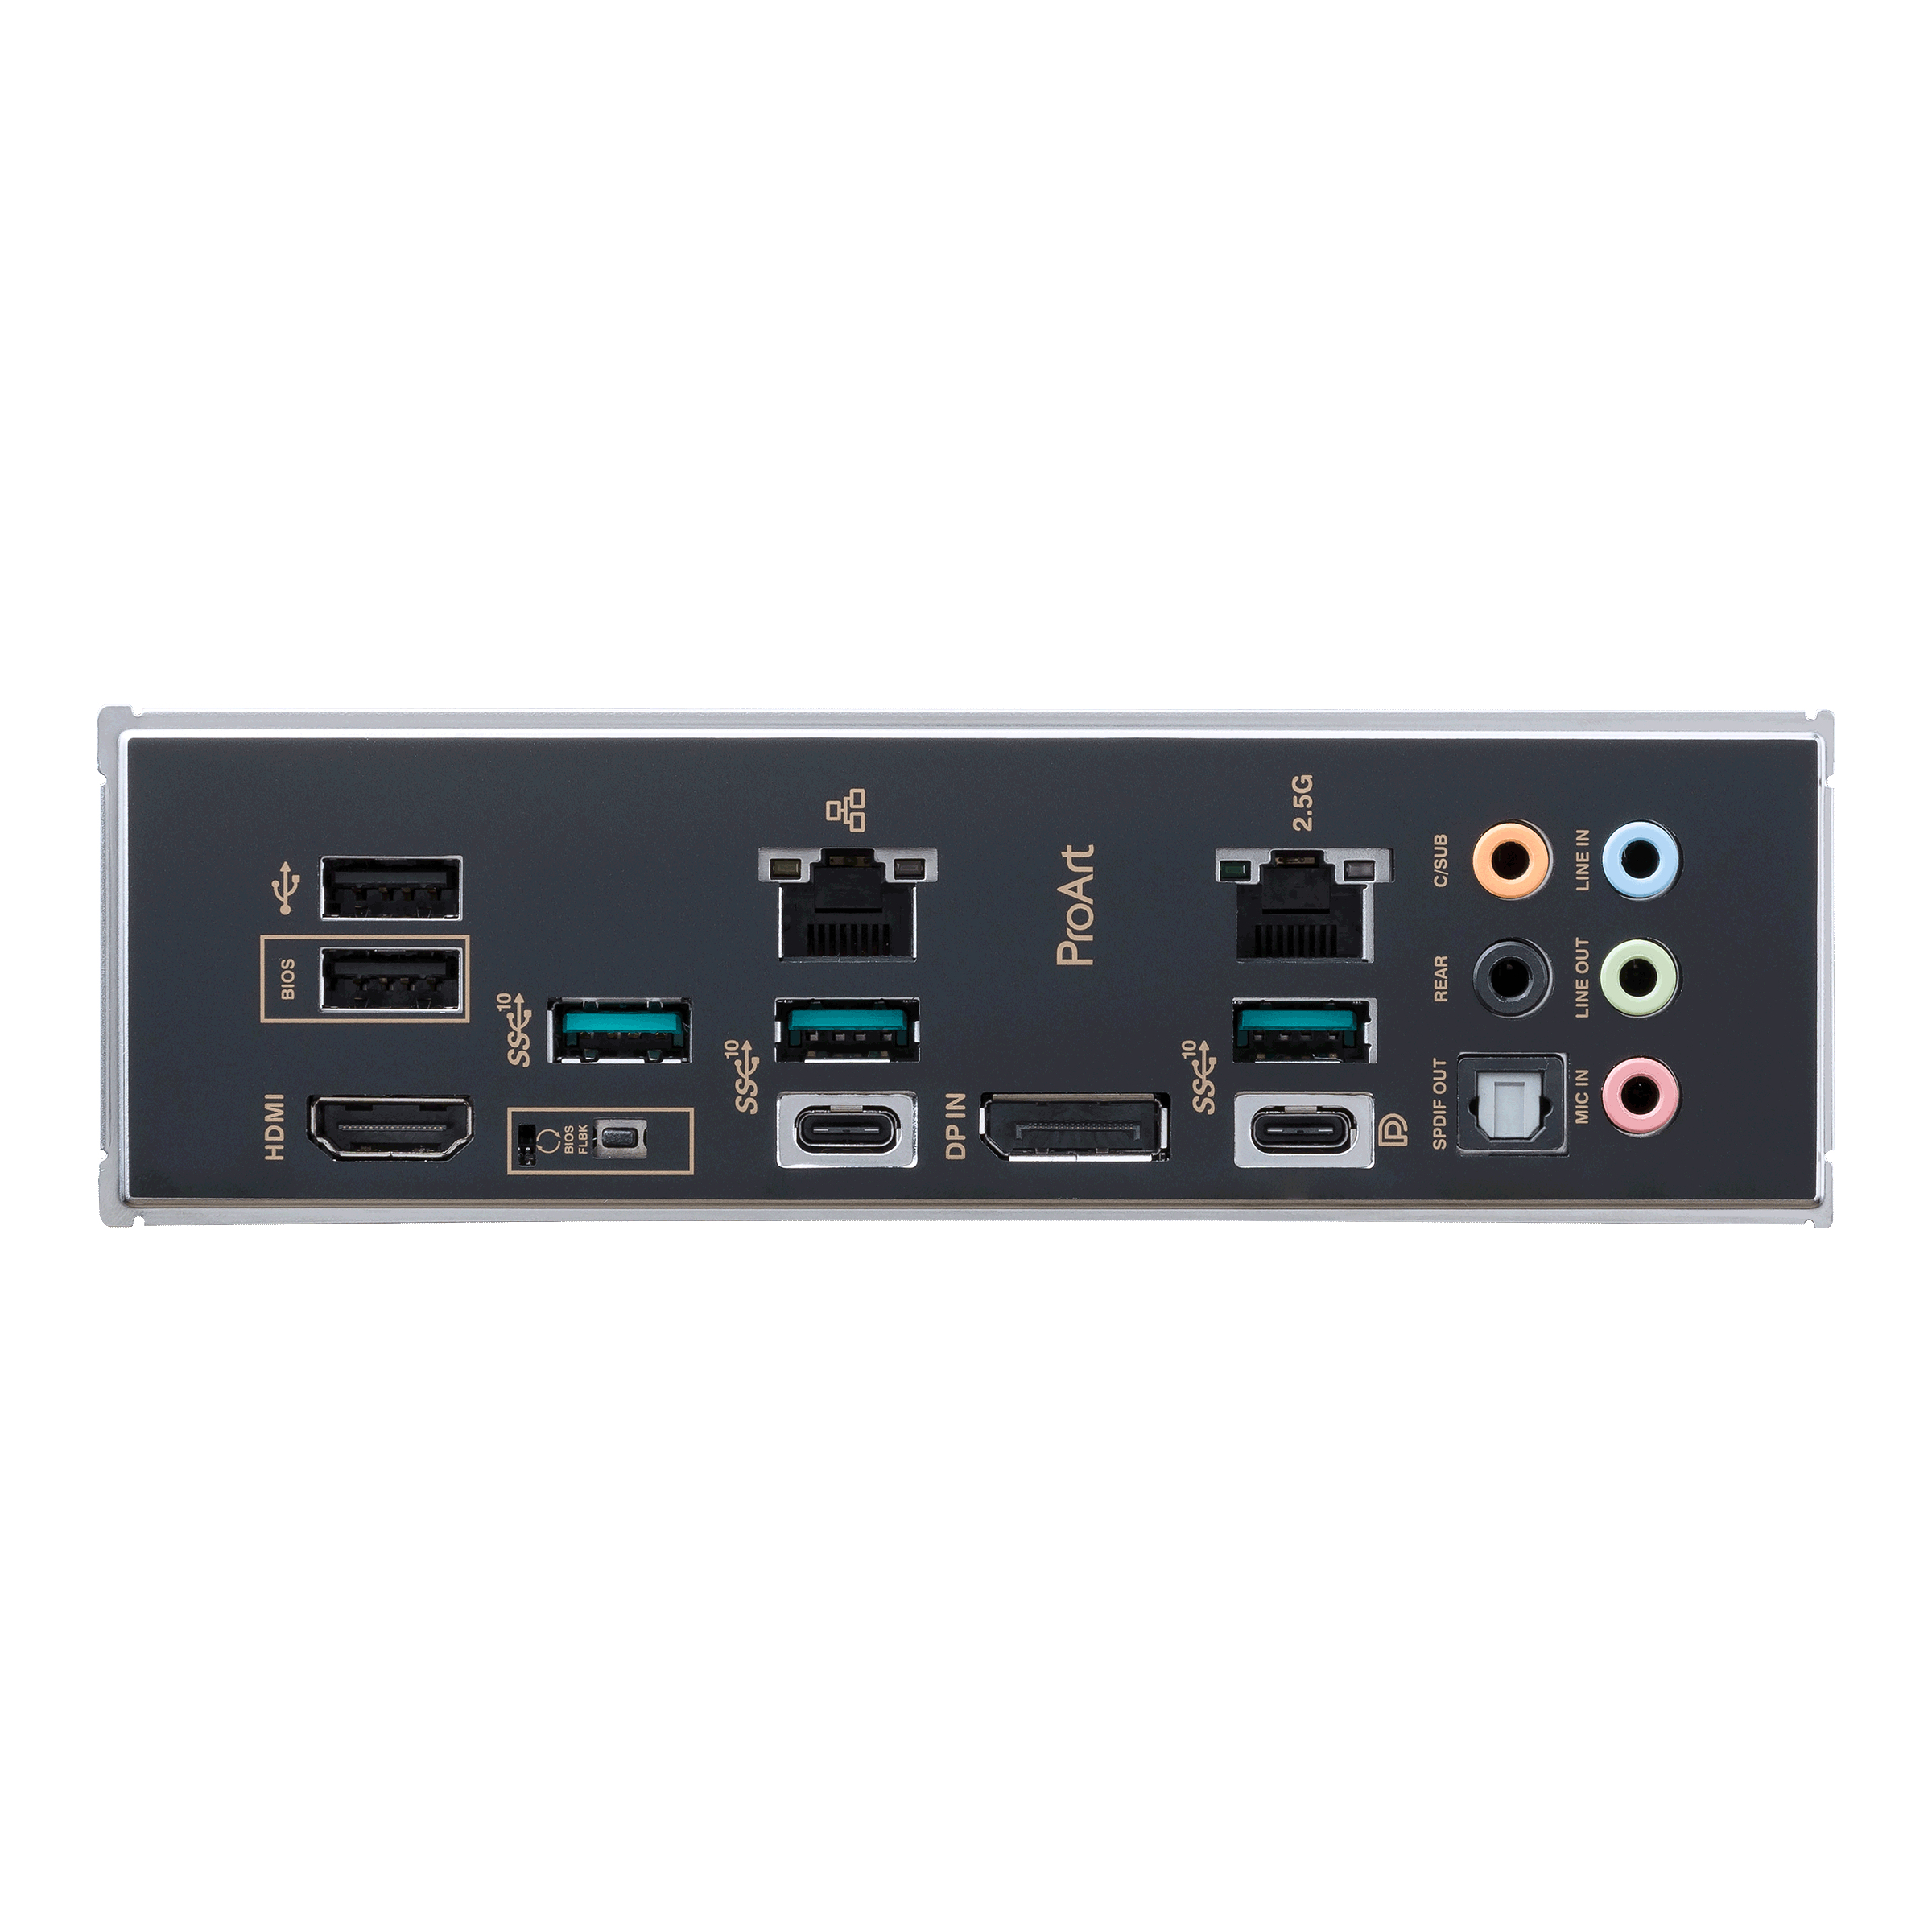 ASUS ProArt B650-CREATOR - Motherboard - ATX - Socket AM5 - AMD B650 Chipsatz - USB 3.2 Gen 1, USB 3.2 Gen 2, USB-C 3.2 Gen2, USB-C 3.2 Gen 2x2 - Gigabit LAN, 2.5 Gigabit LAN - Onboard-Grafik (CPU erforderlich)